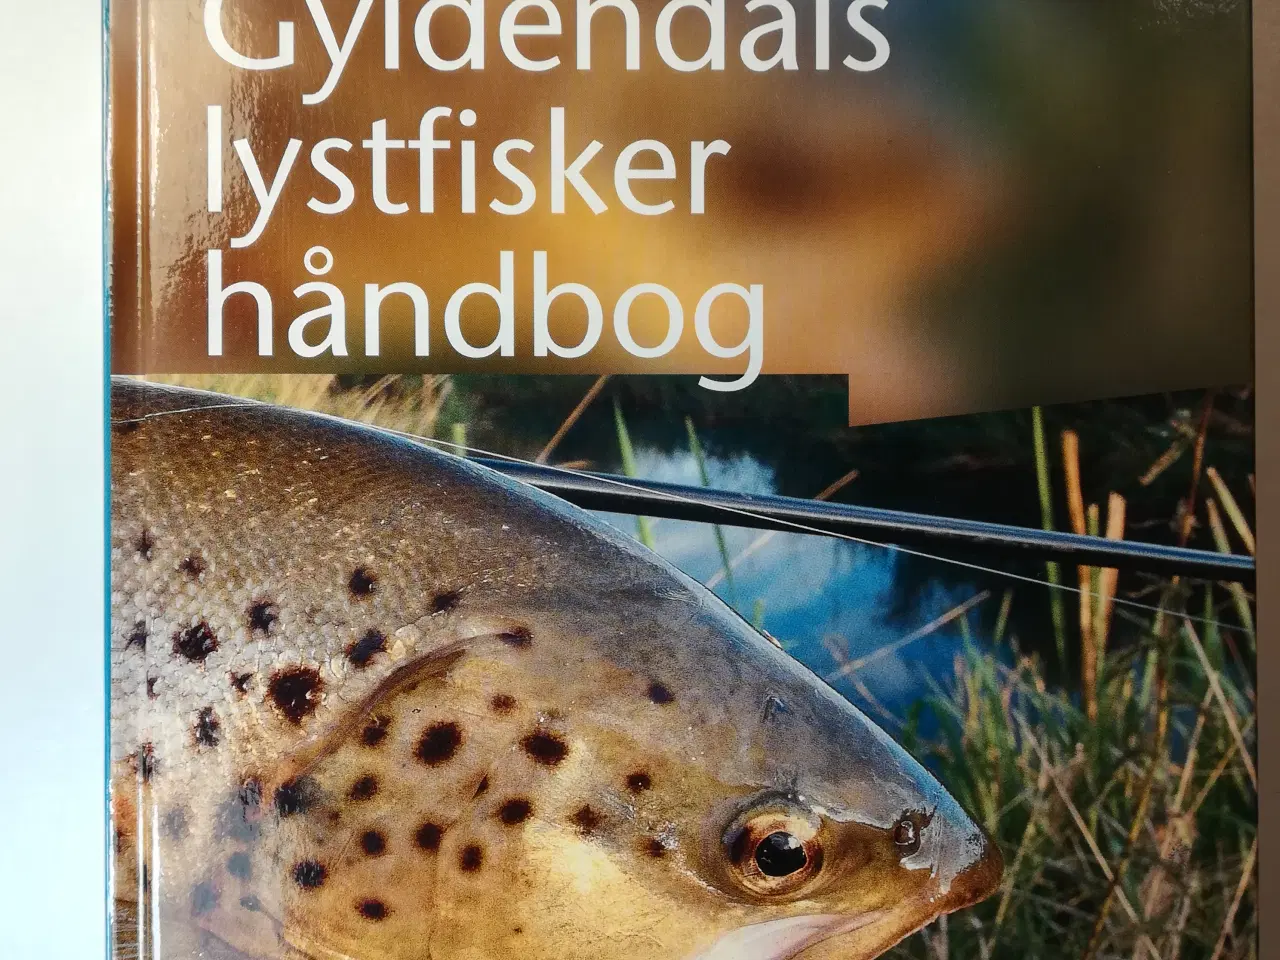 Billede 1 - Gyldendals lystfiskerhåndbog -fremtræder som ulæst